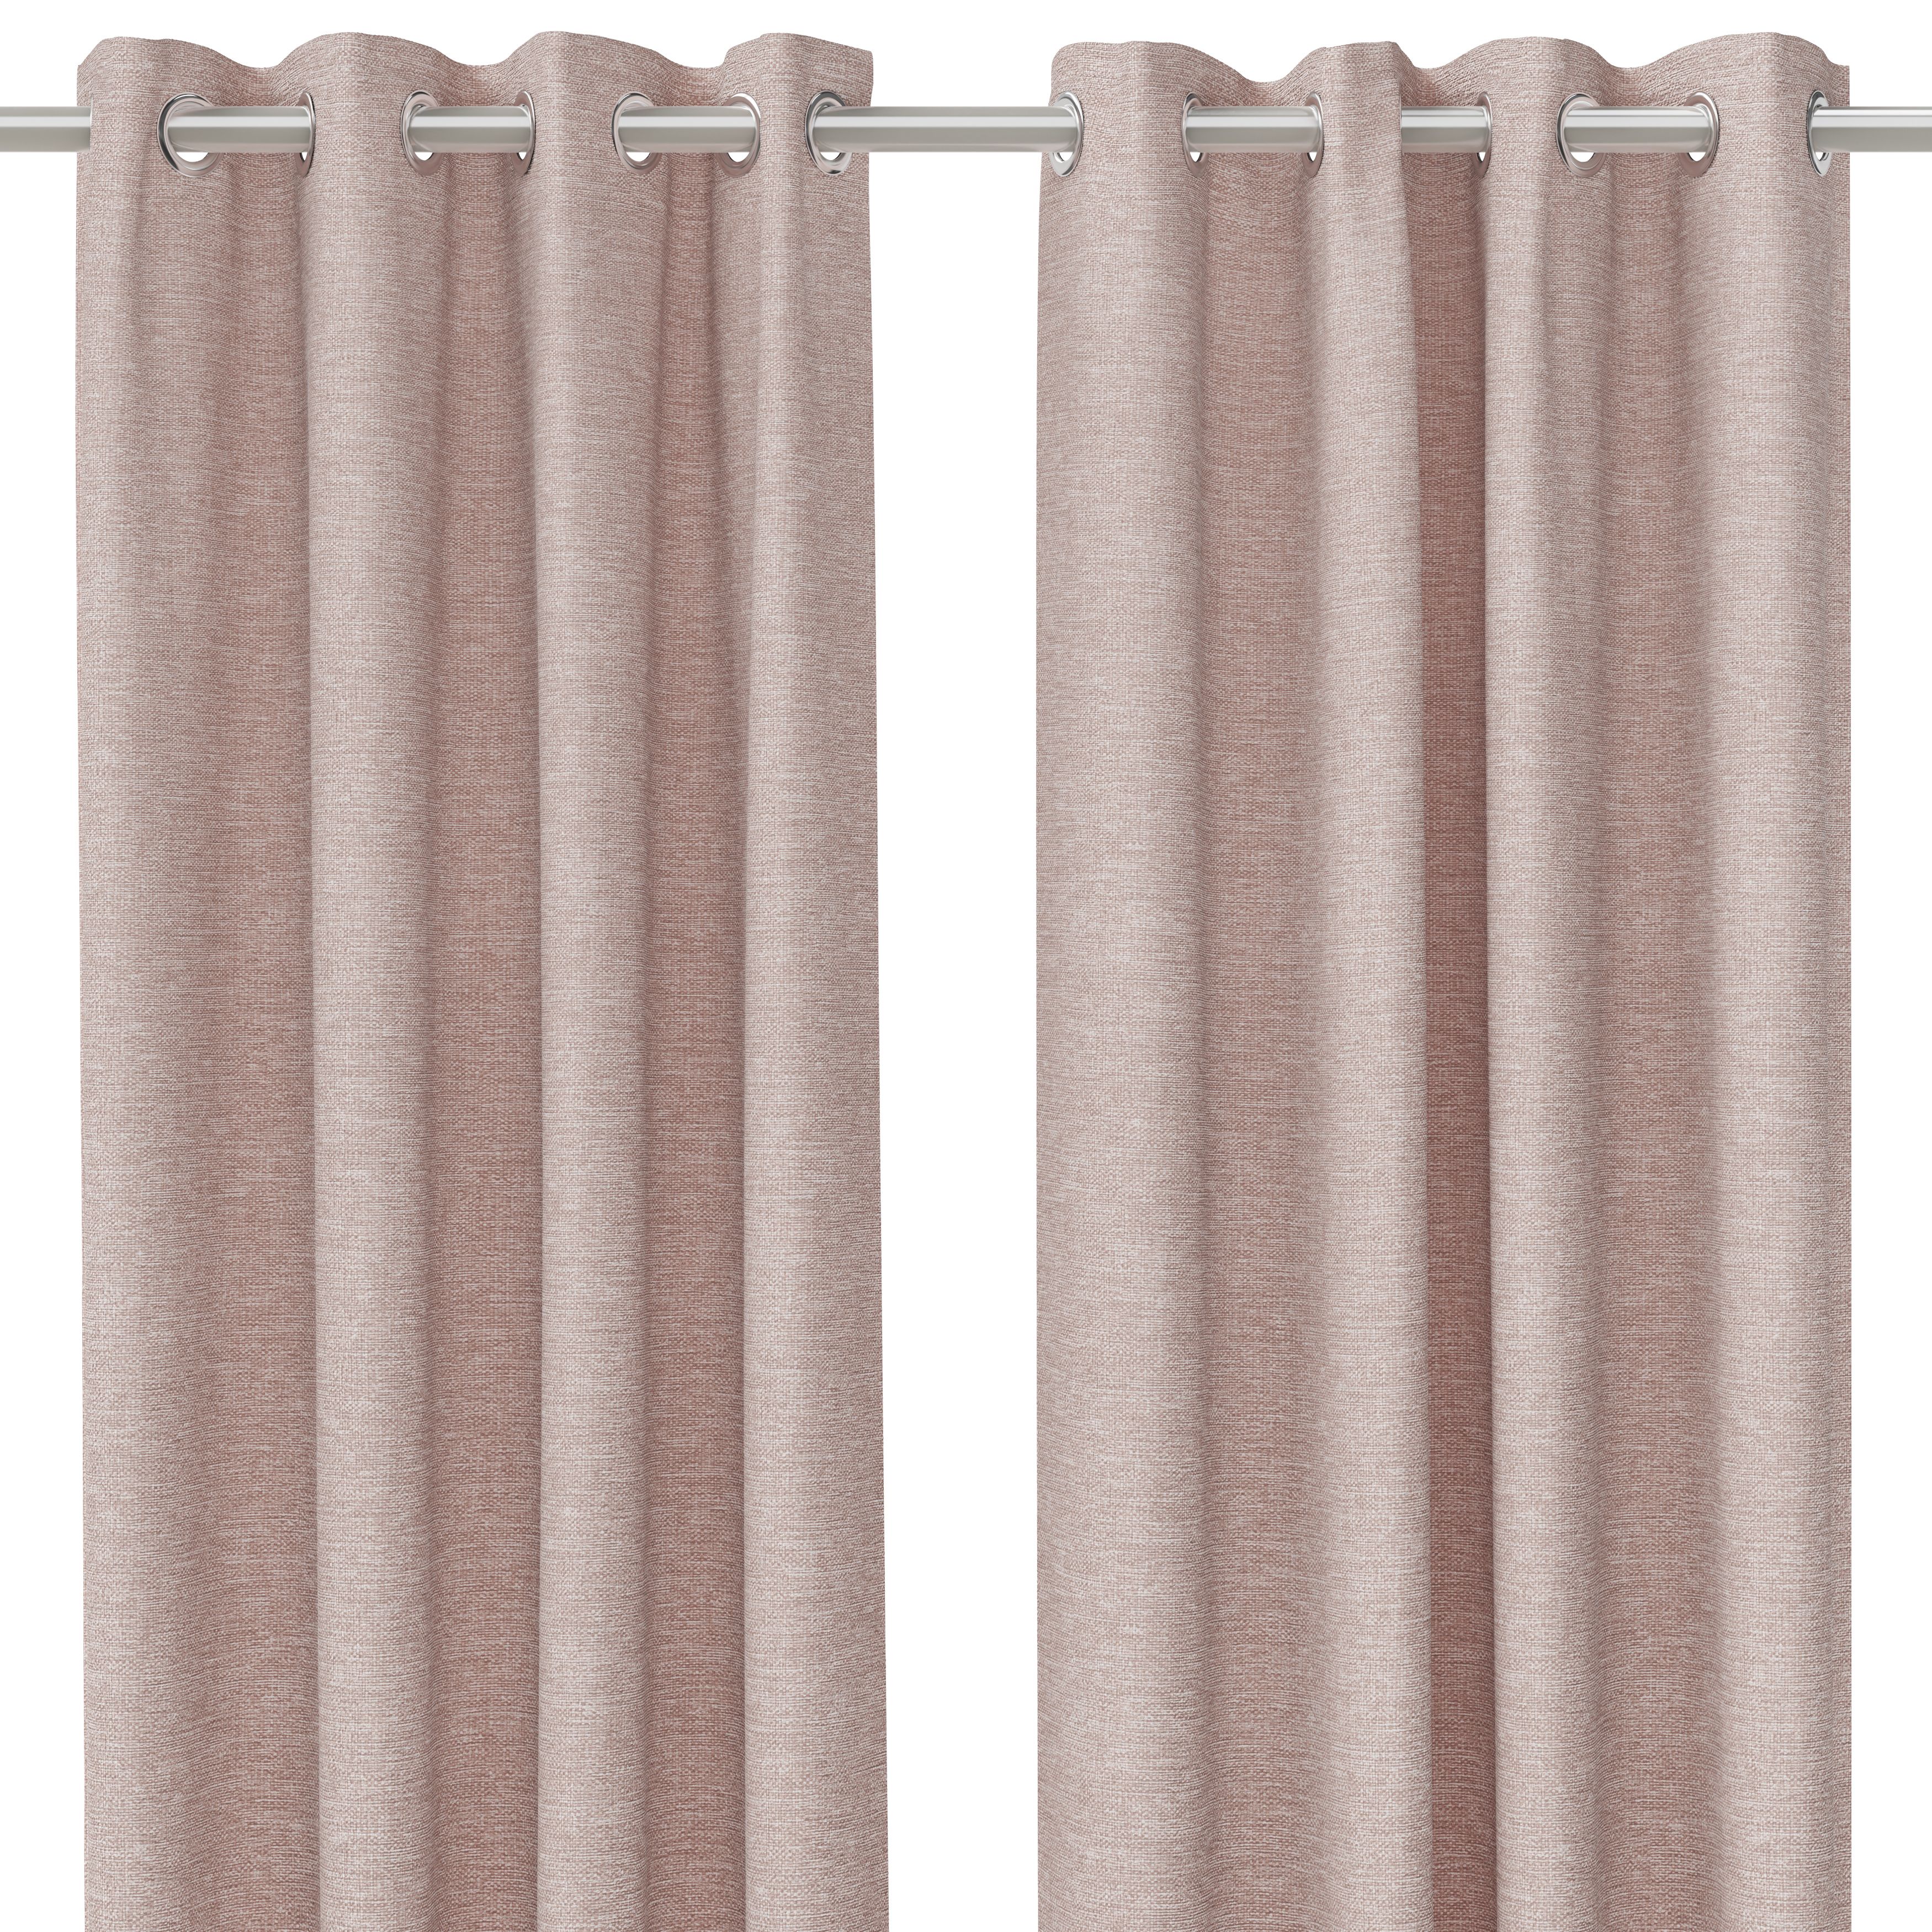 Napour Pink Plain Lined Eyelet Curtain (W)167cm (L)228cm, Pair